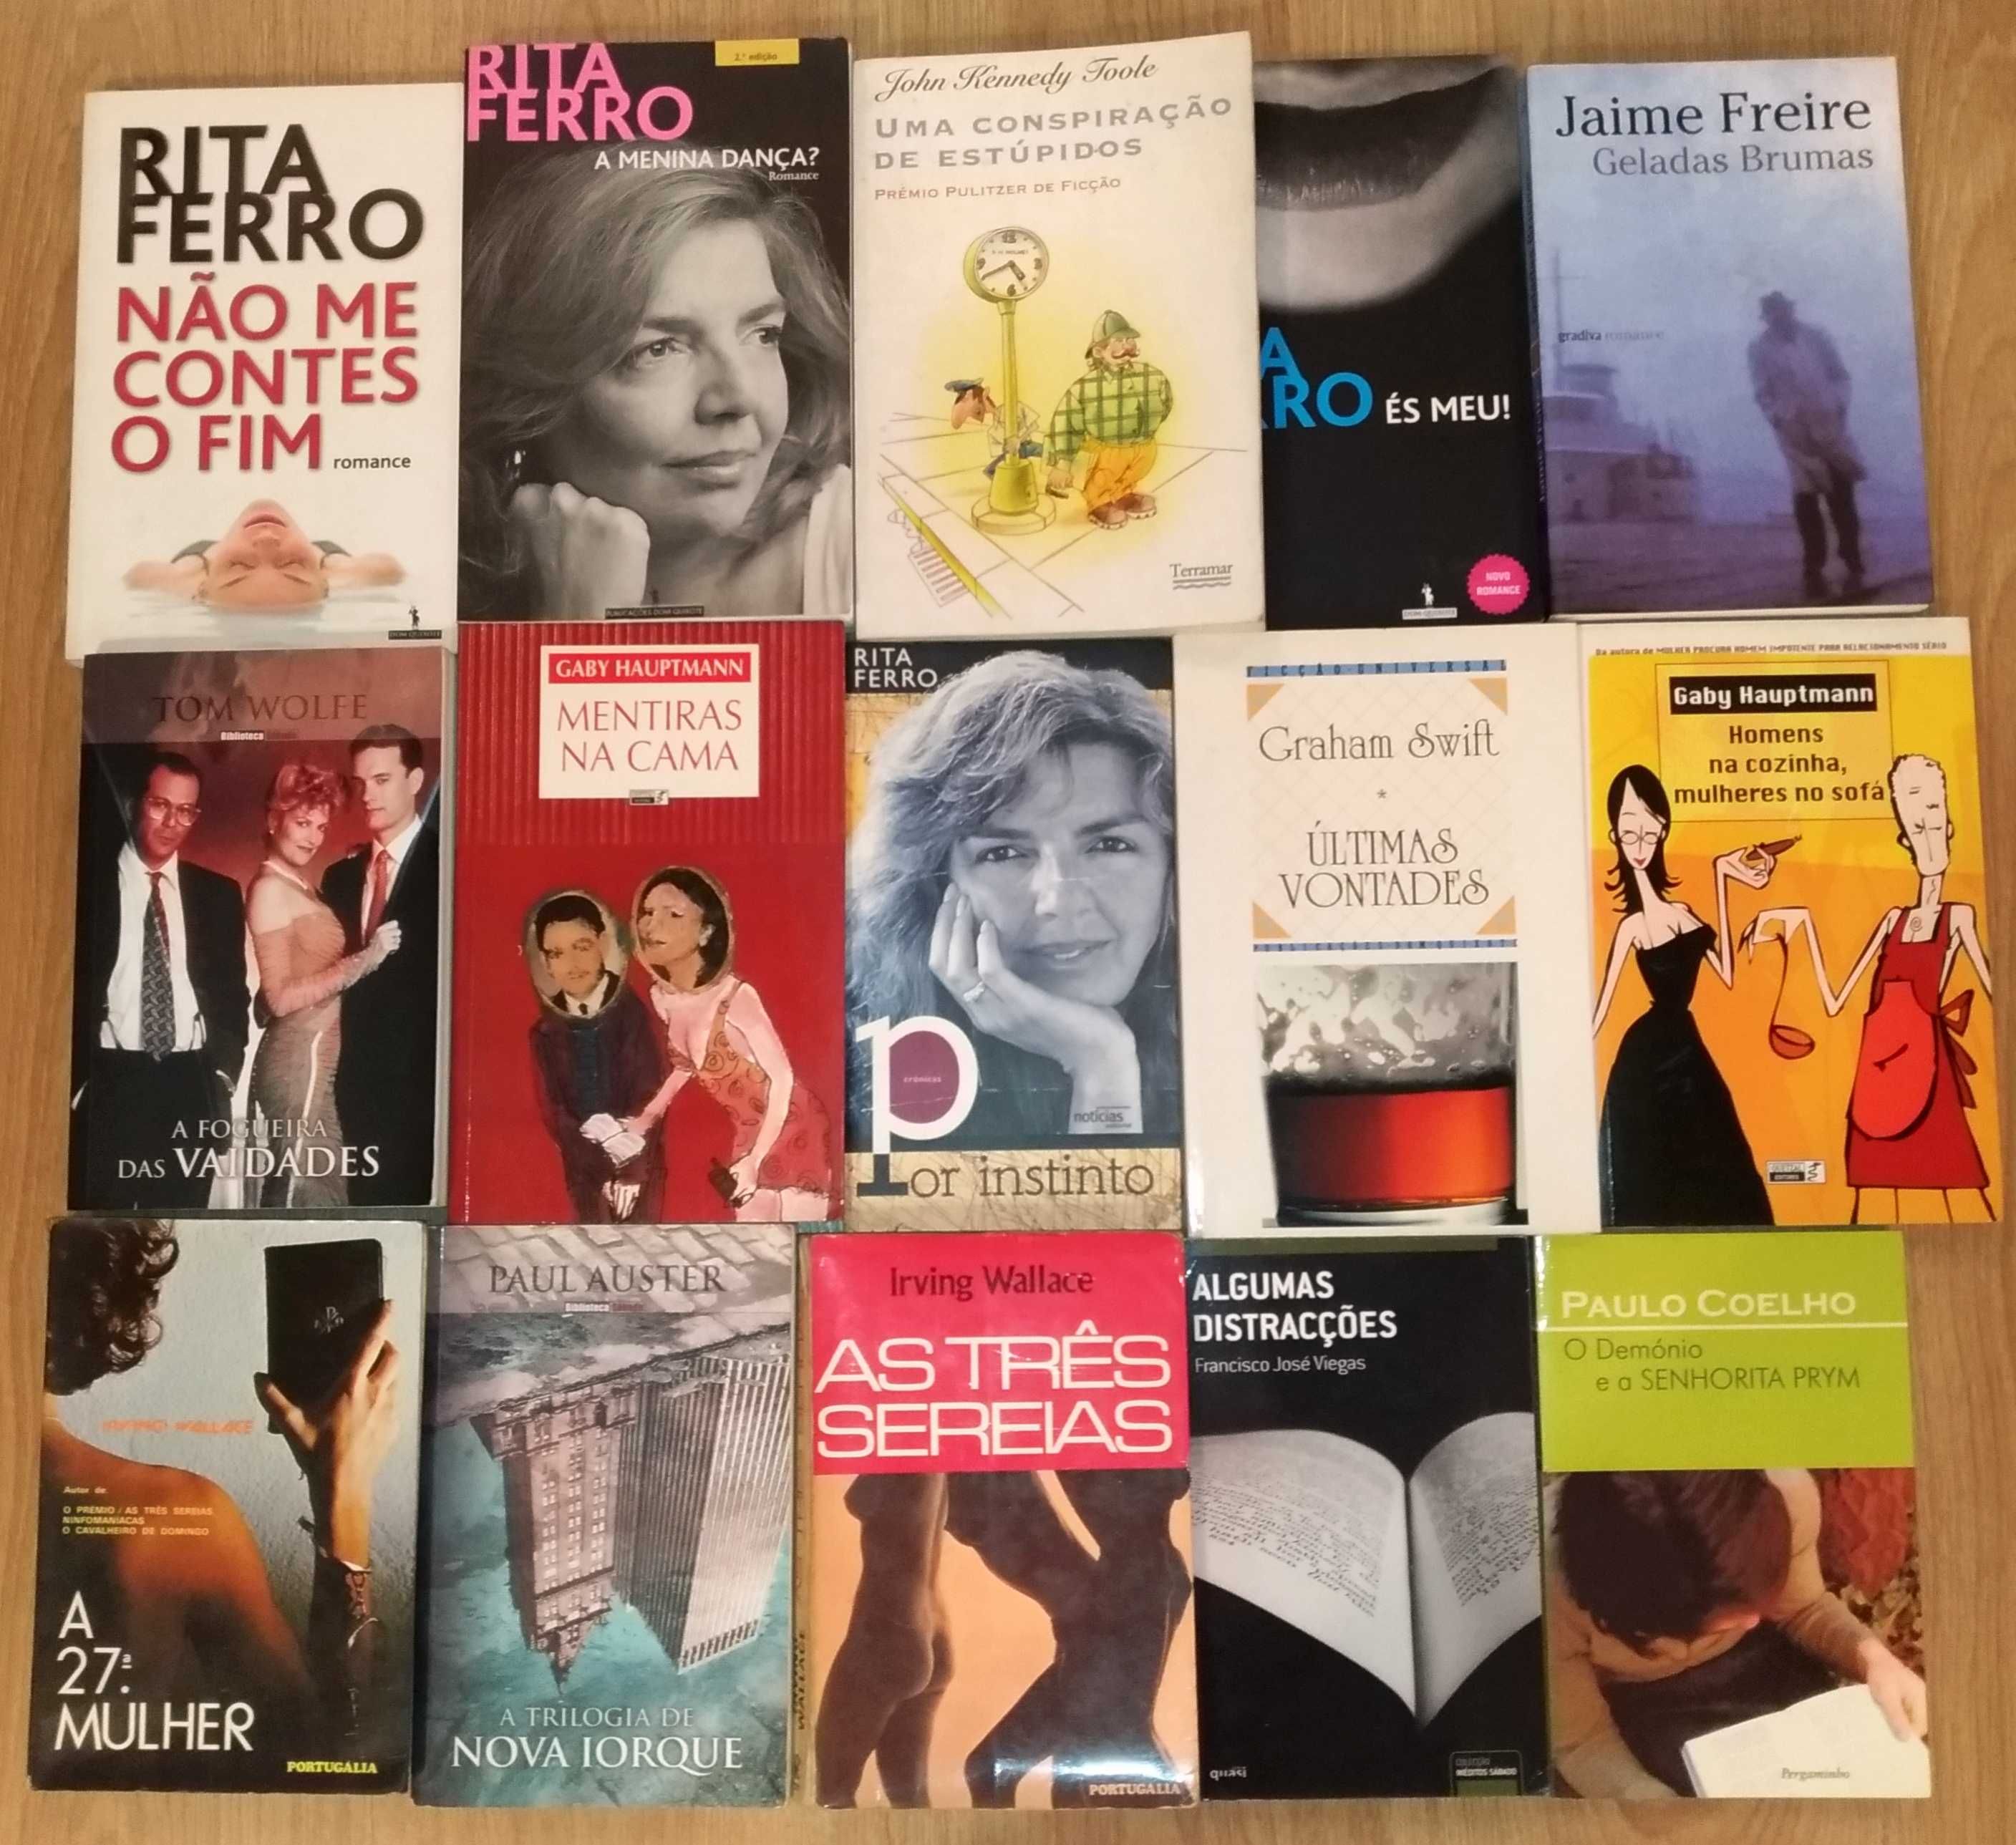 Livros - Paul Auster, Paulo Coelho, Rita Ferro, Tom Wolfe, F. Viegas .